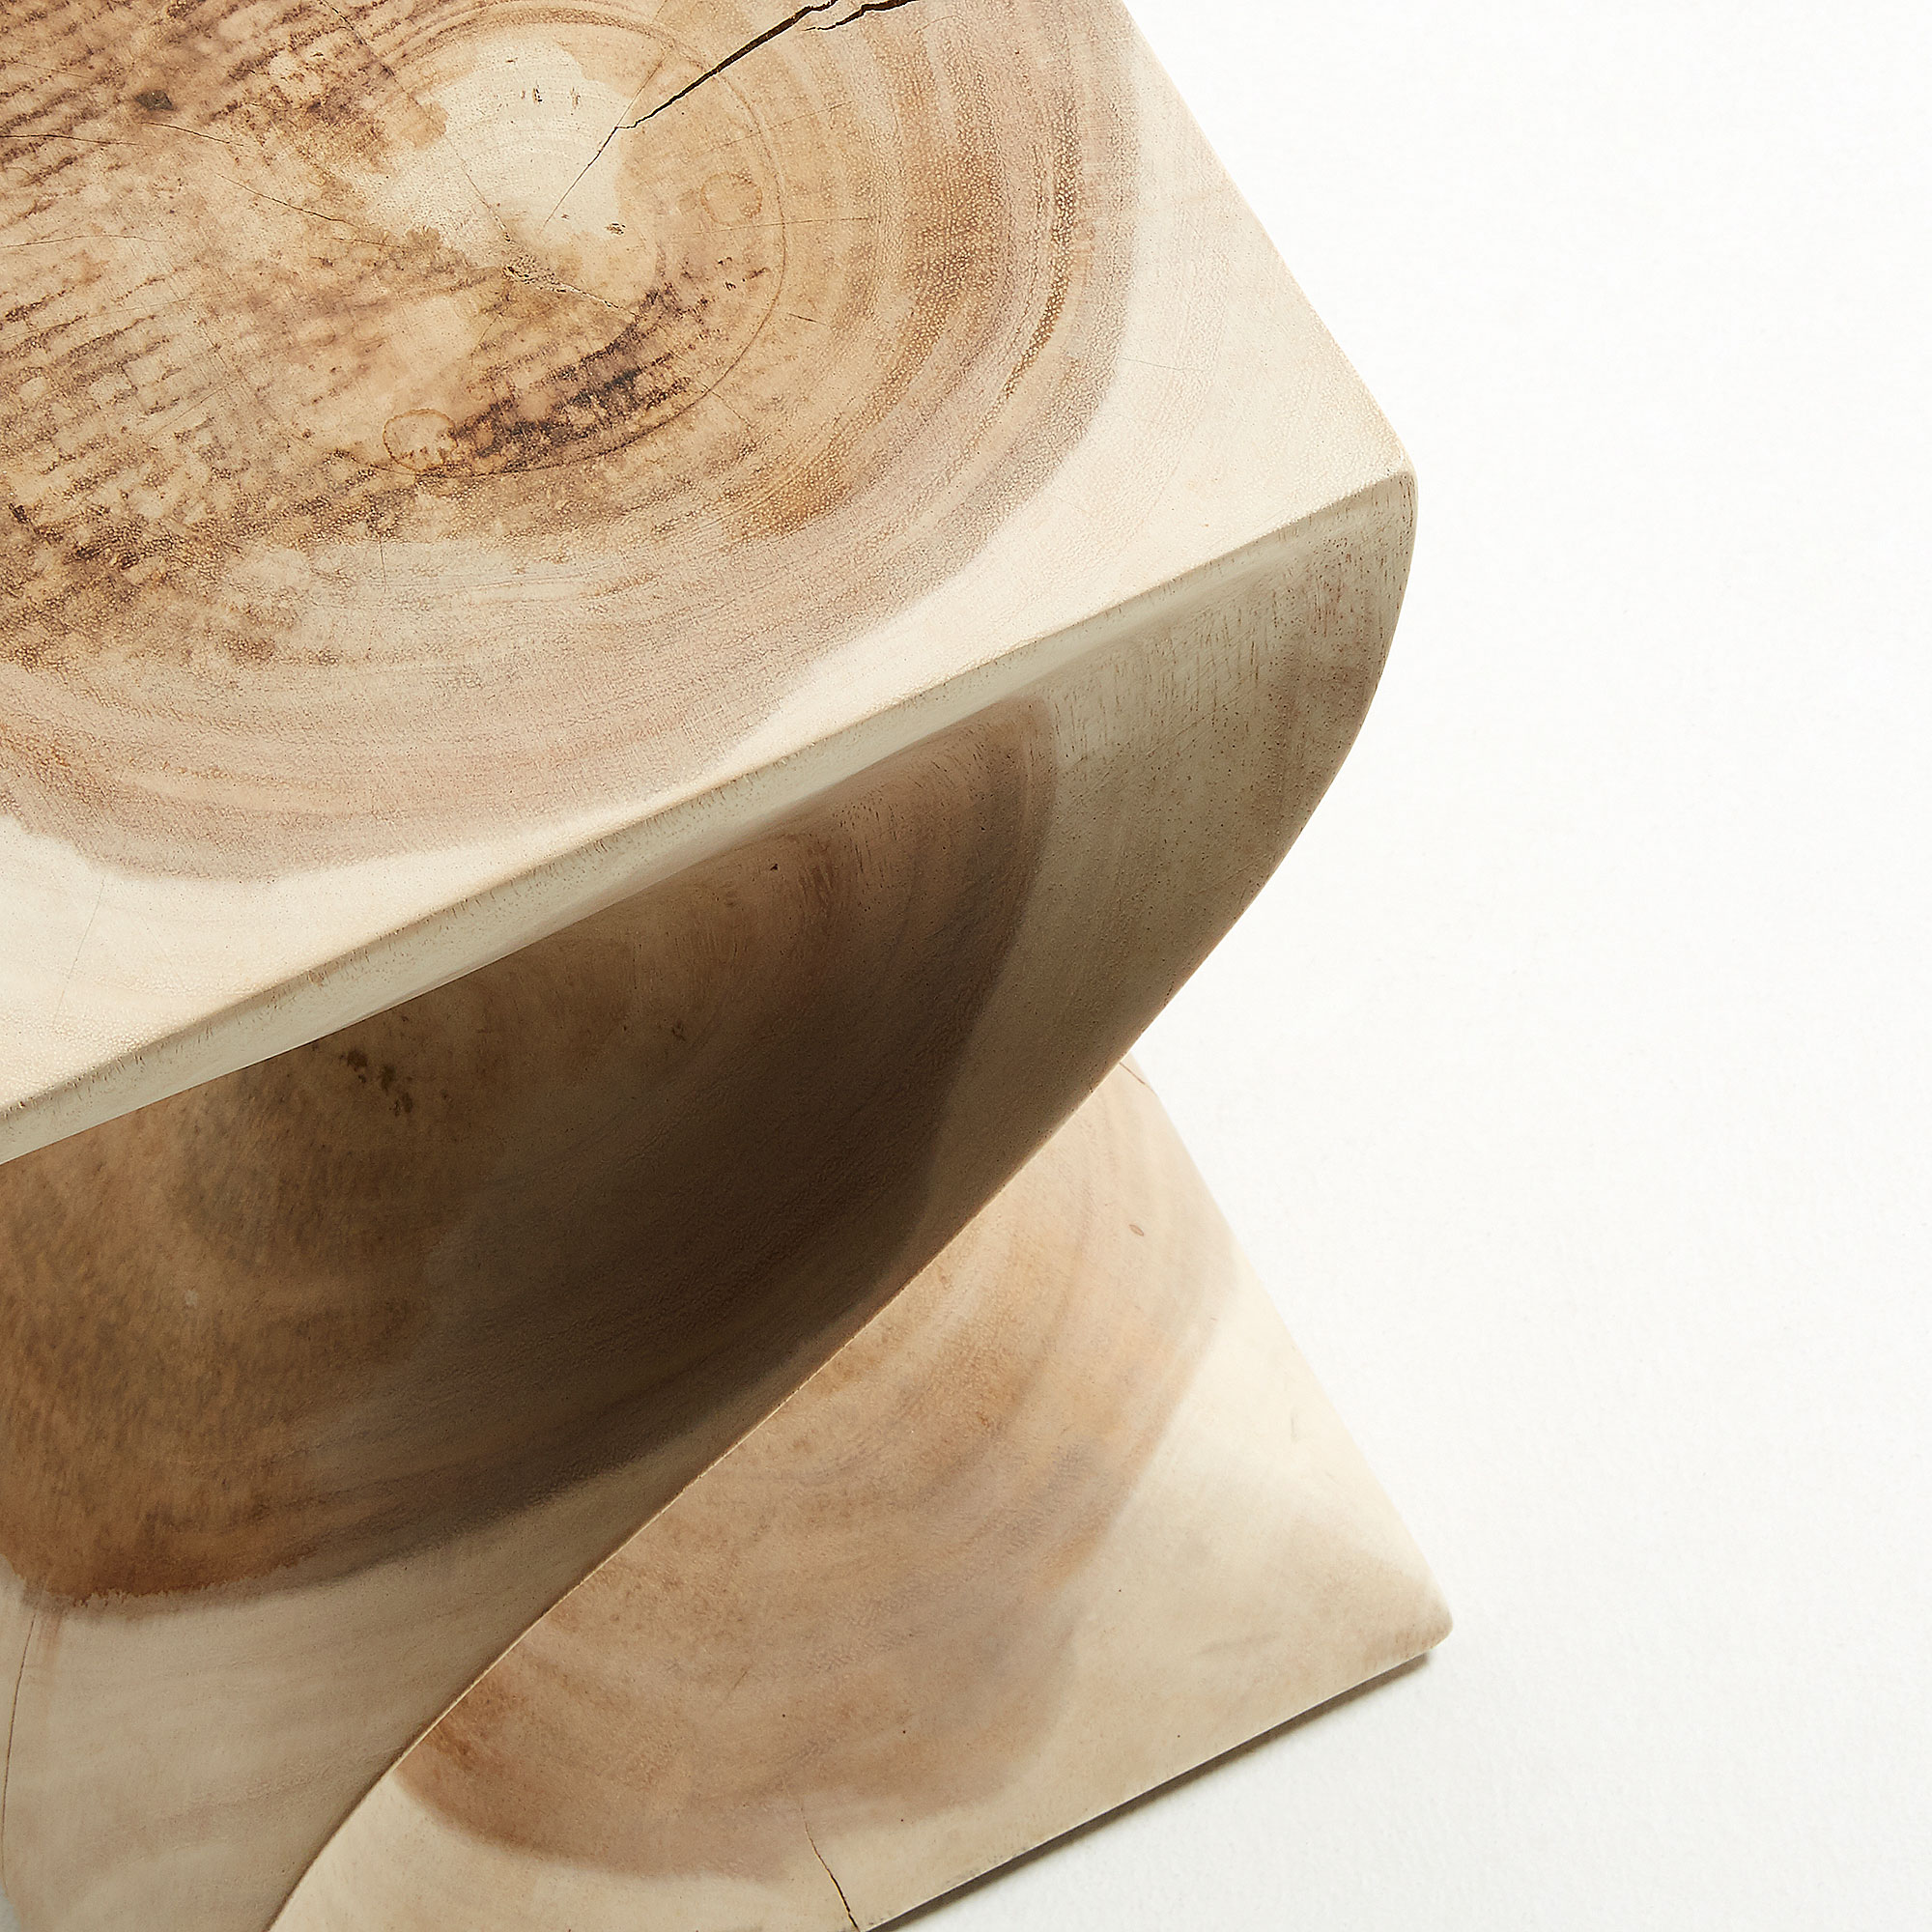 La Forma (ex Julia Grup) Приставной столик Hakon из мунгурского дерева